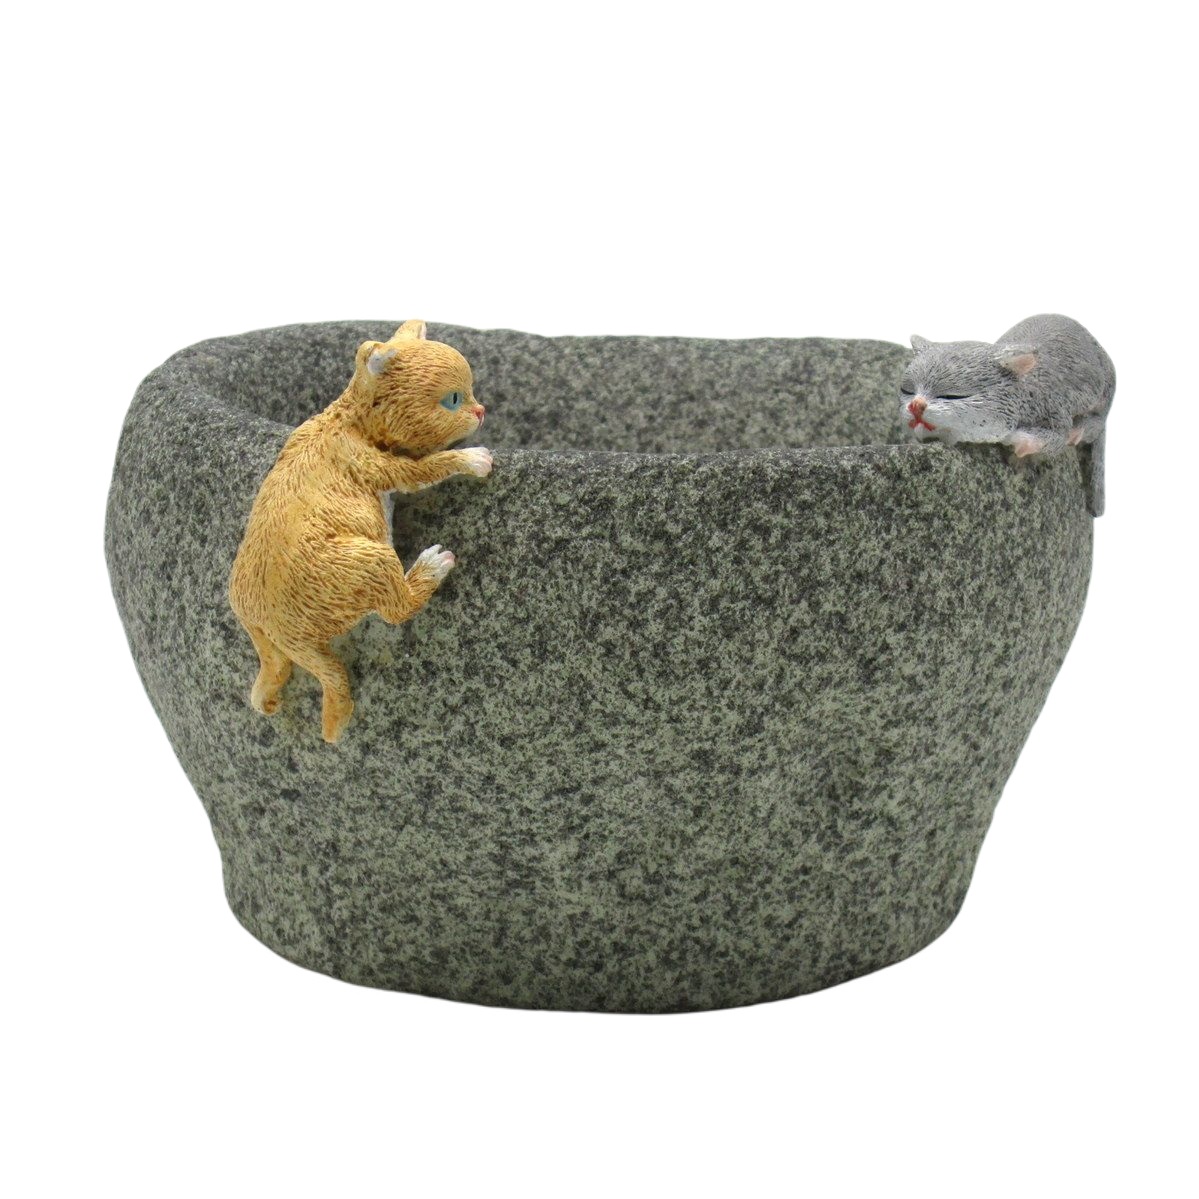 フラワーベース 花器 岩にくっつく2匹の猫